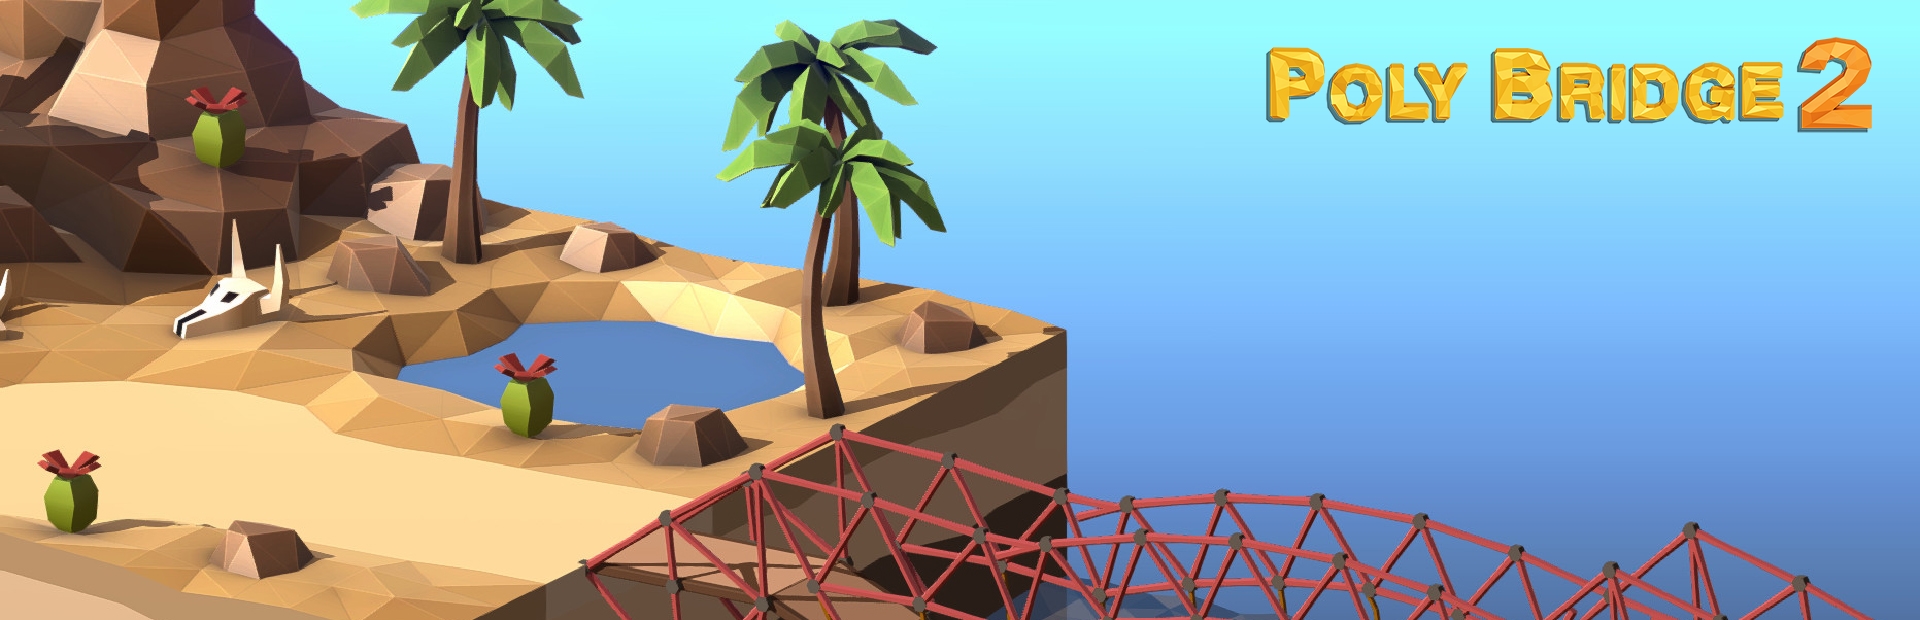 دانلود بازی Poly Bridge 2 برای پی سی | گیمباتو